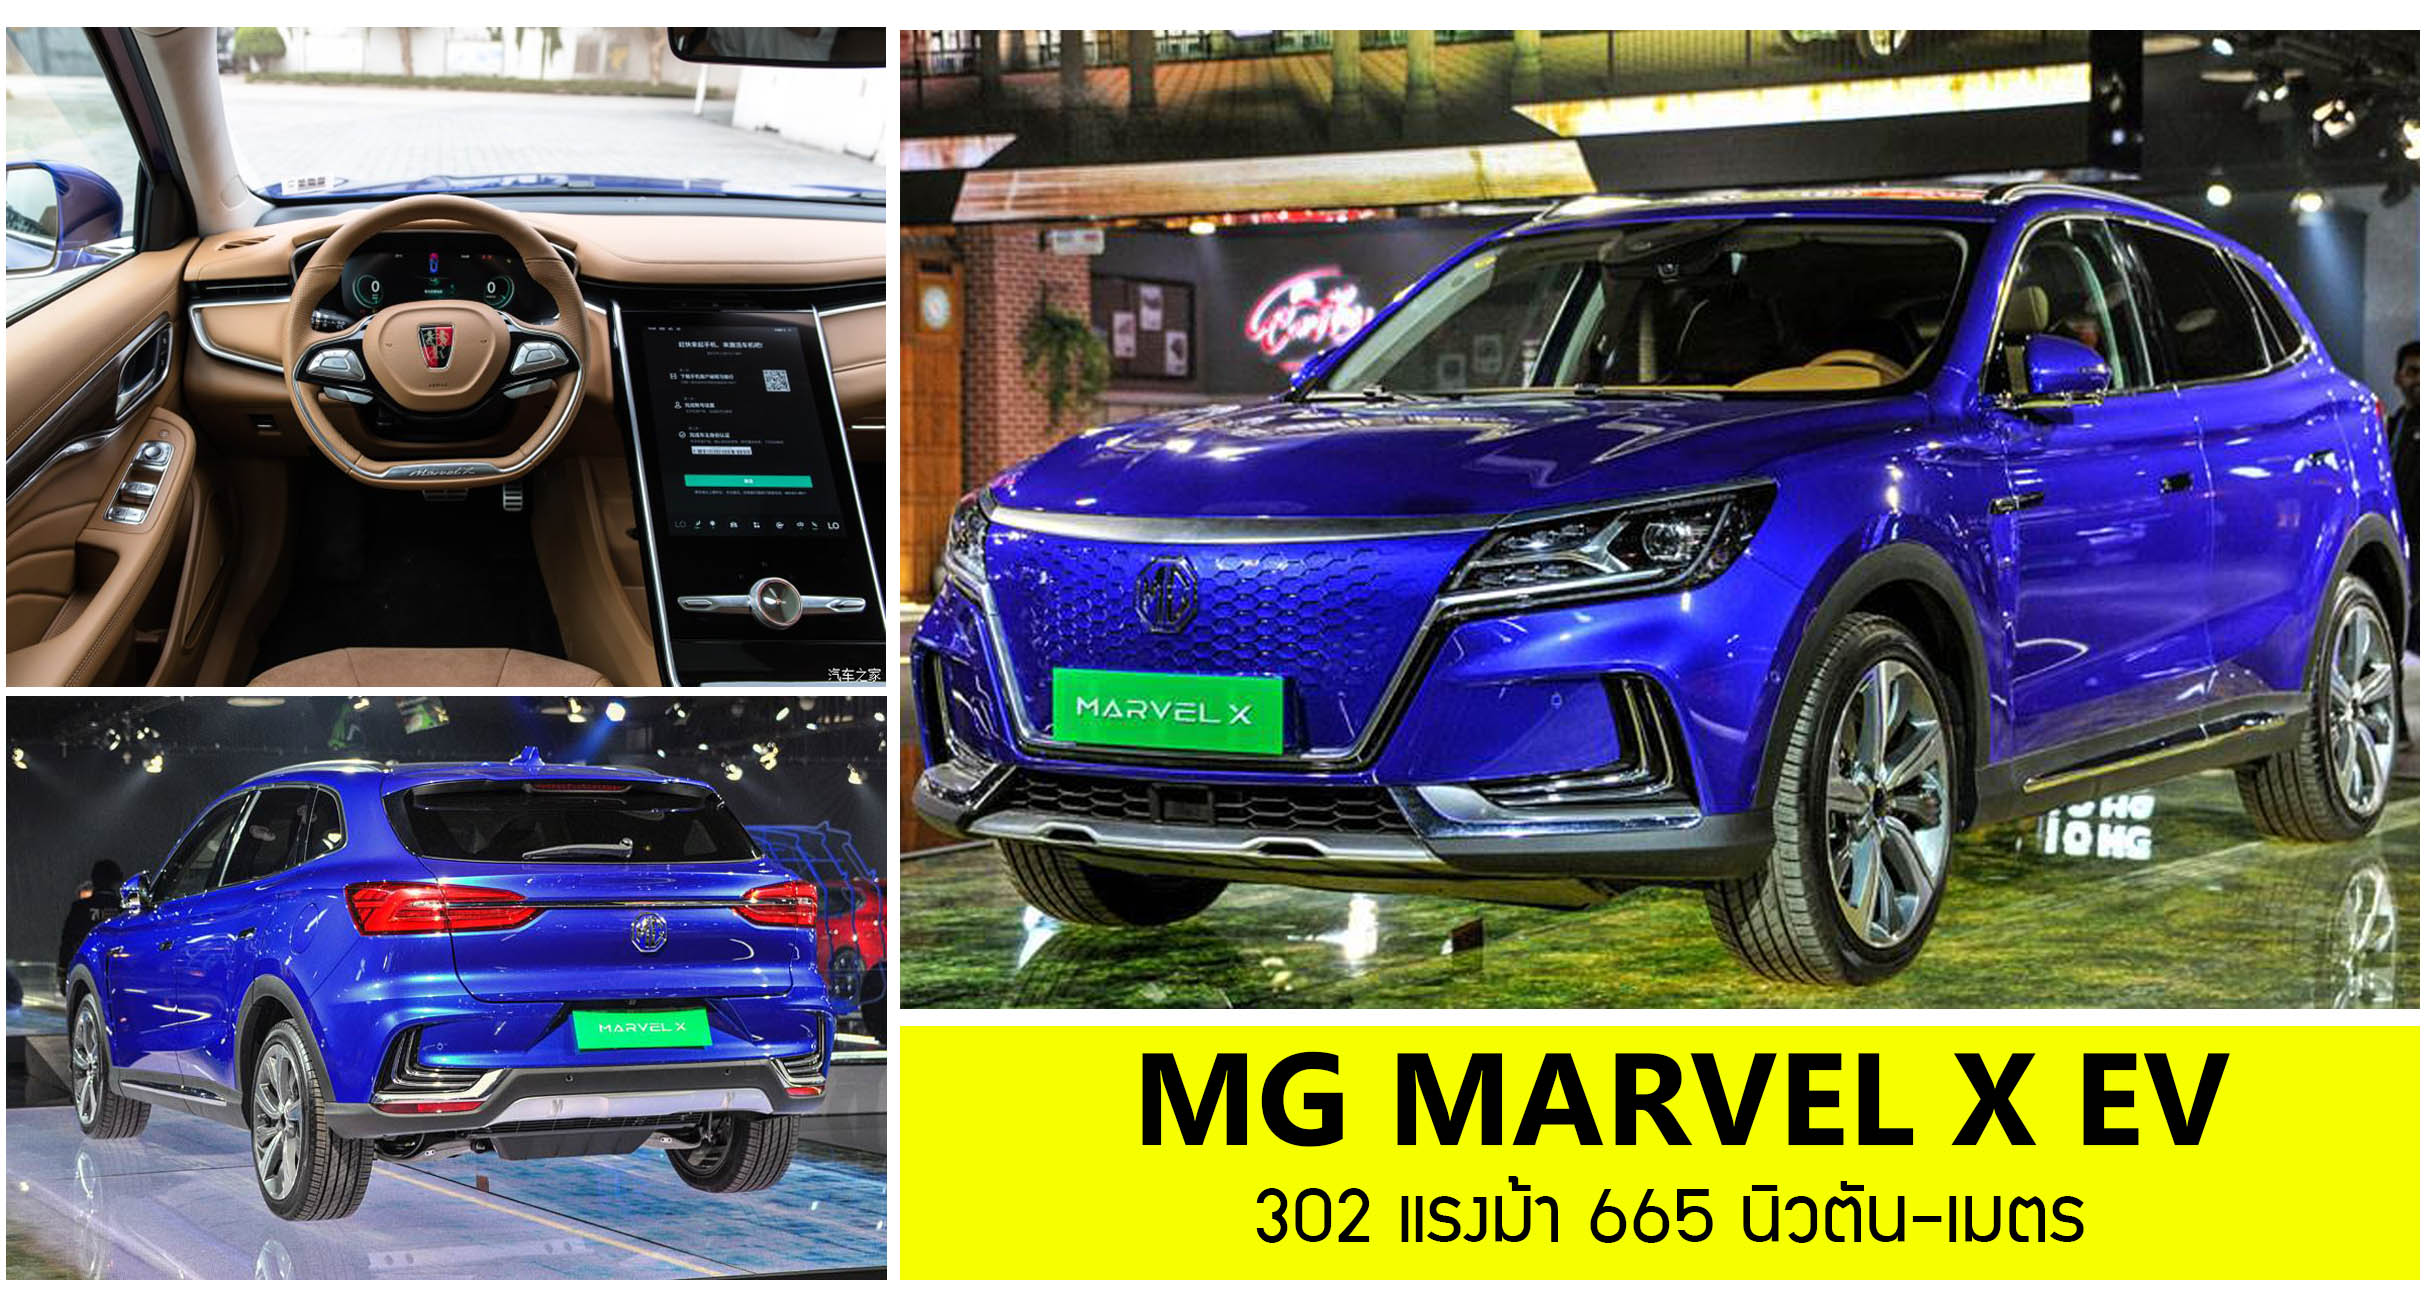 ภาพคันจริง! MG MARVEL X EV 302 แรงม้า 665 นิวตัน-เมตร 2020 Auto Expo